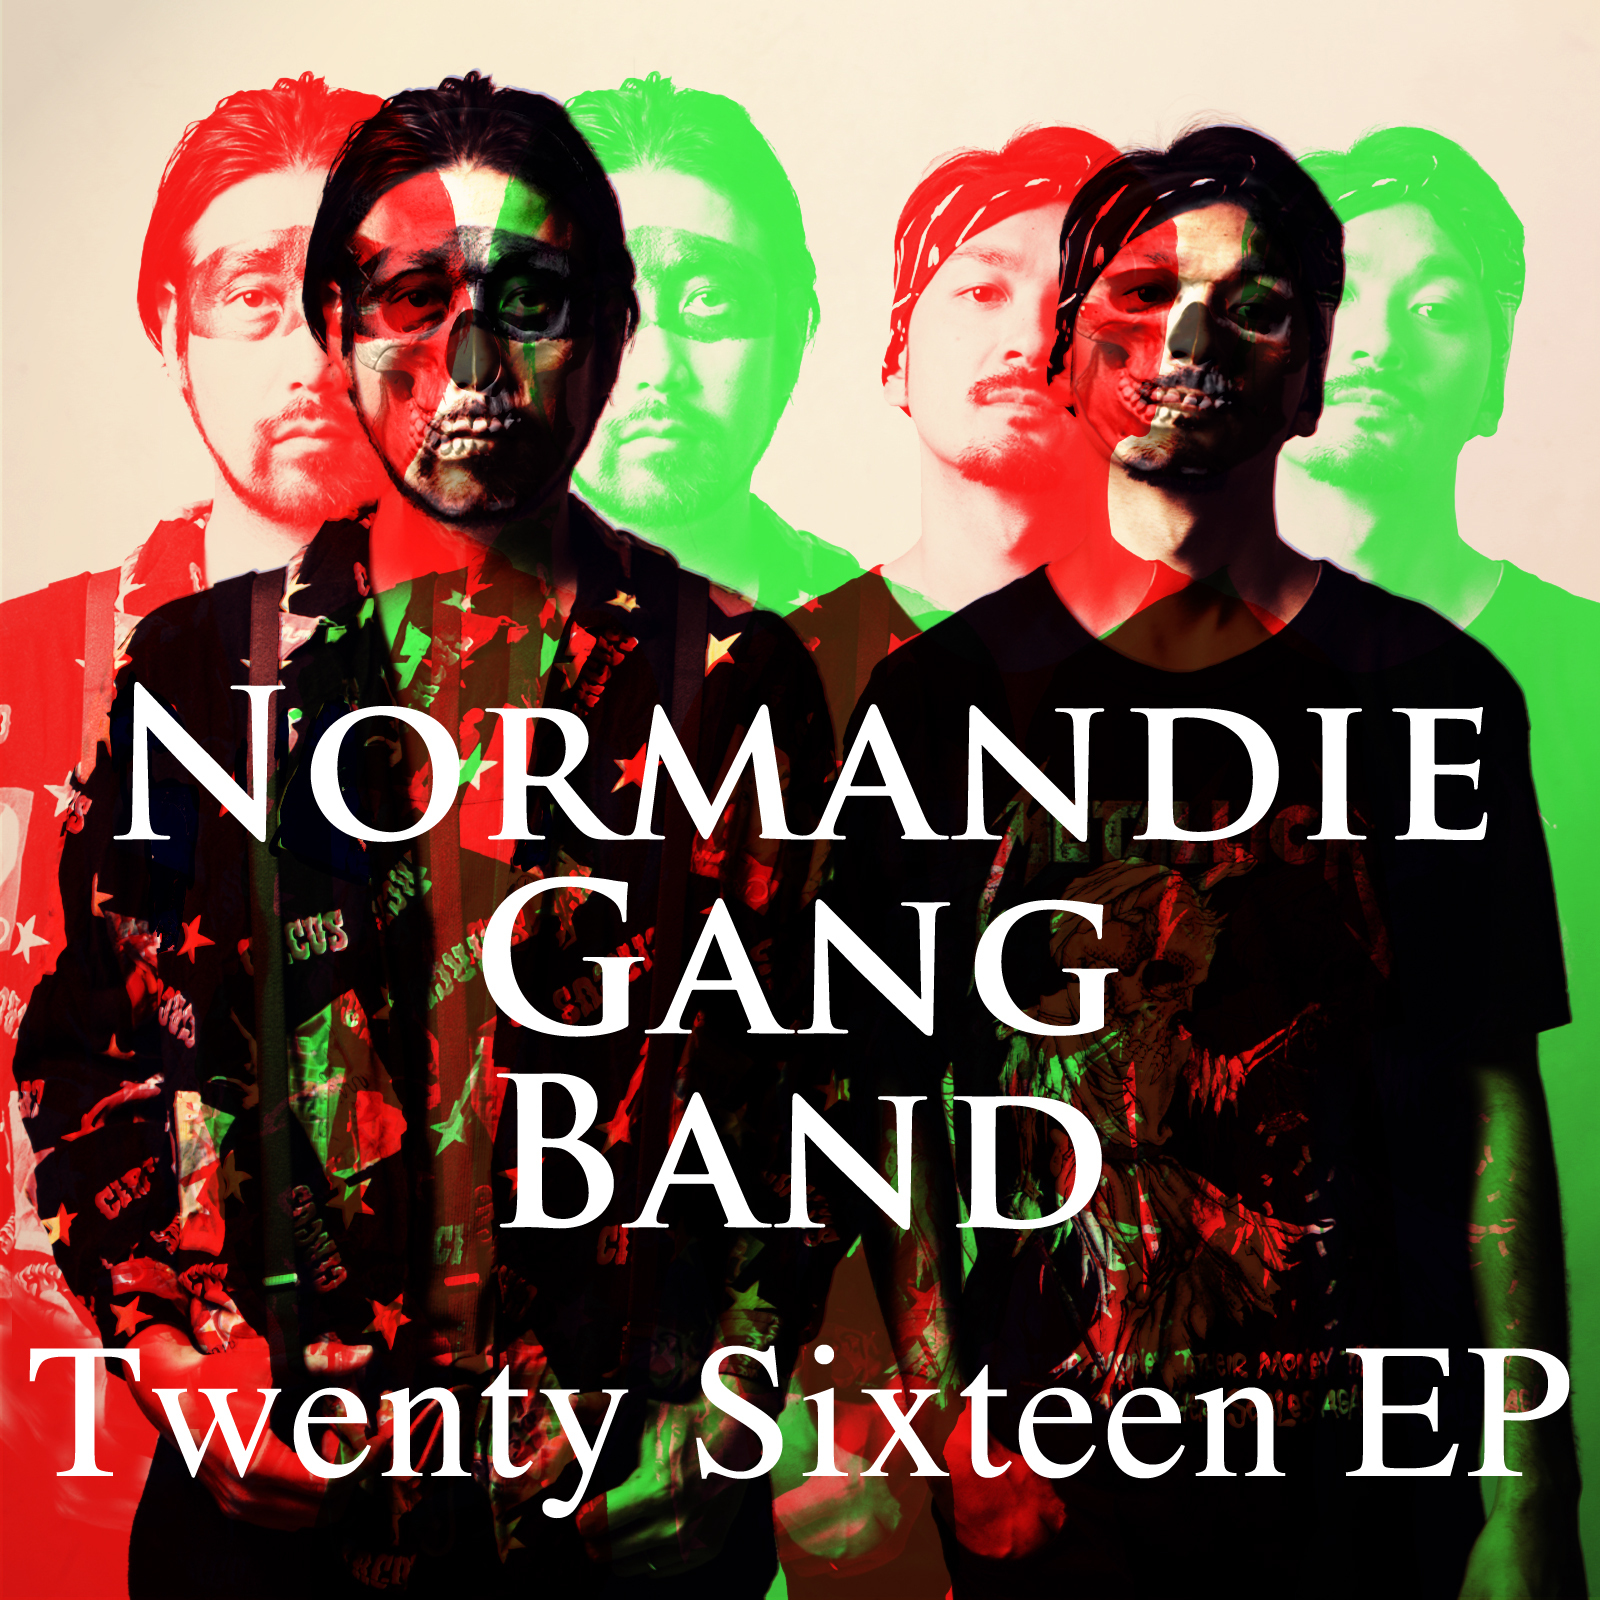 [CD] Twenty Sixteen EP / NORMANDIE GANG BAND 1,080円(税込)